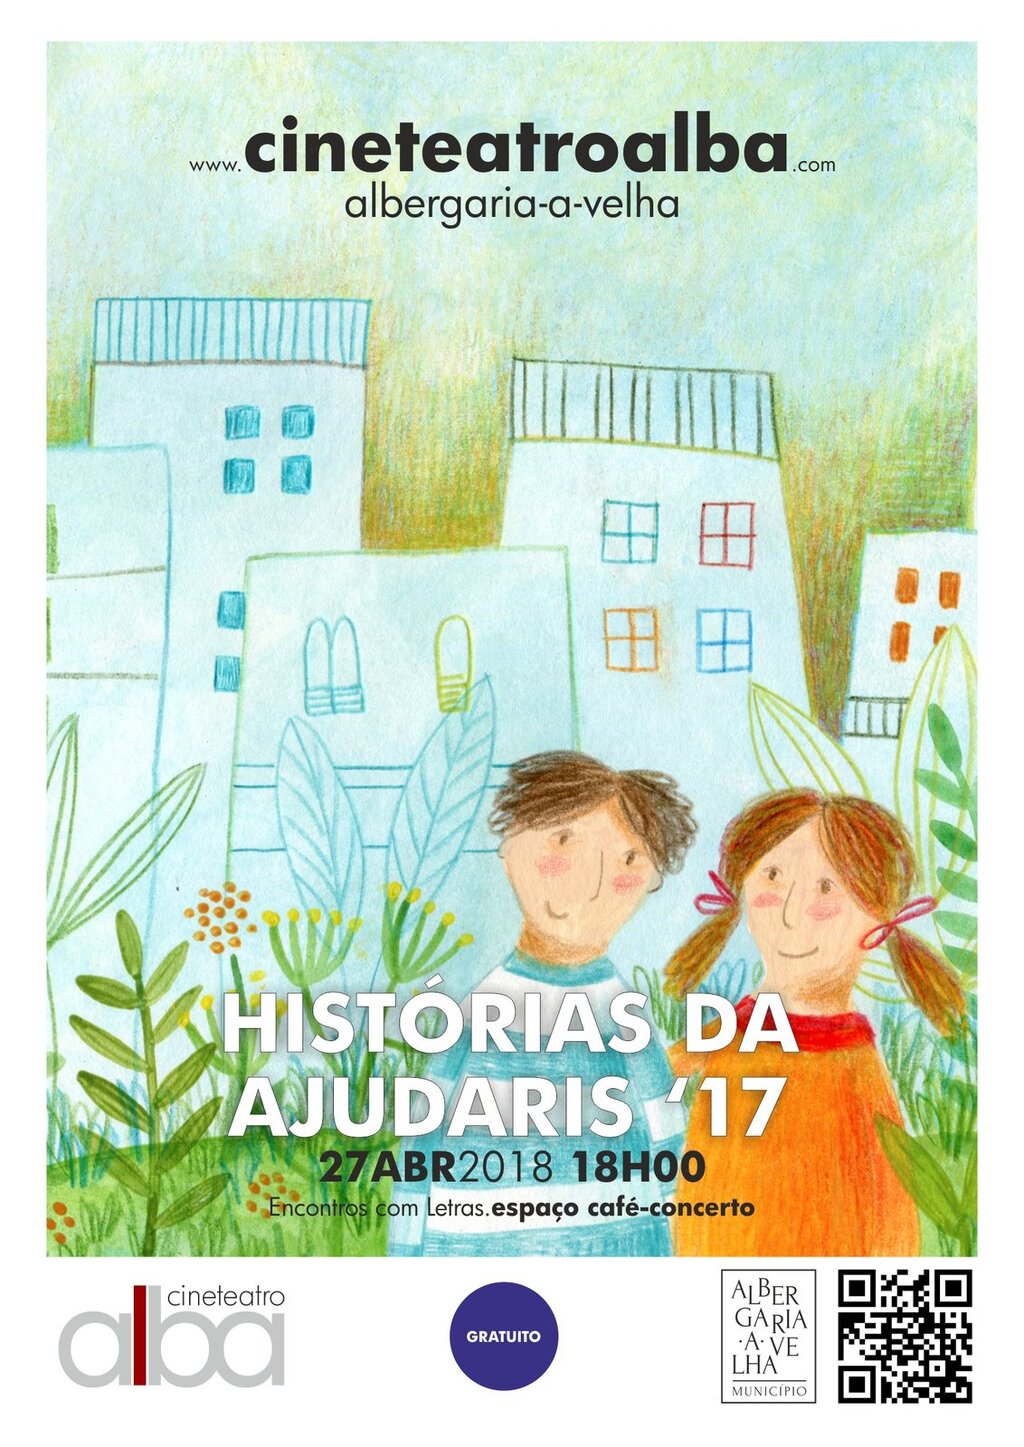 Festa de lançamento do livro Histórias da Ajudaris’17 em Albergaria-a-Velha